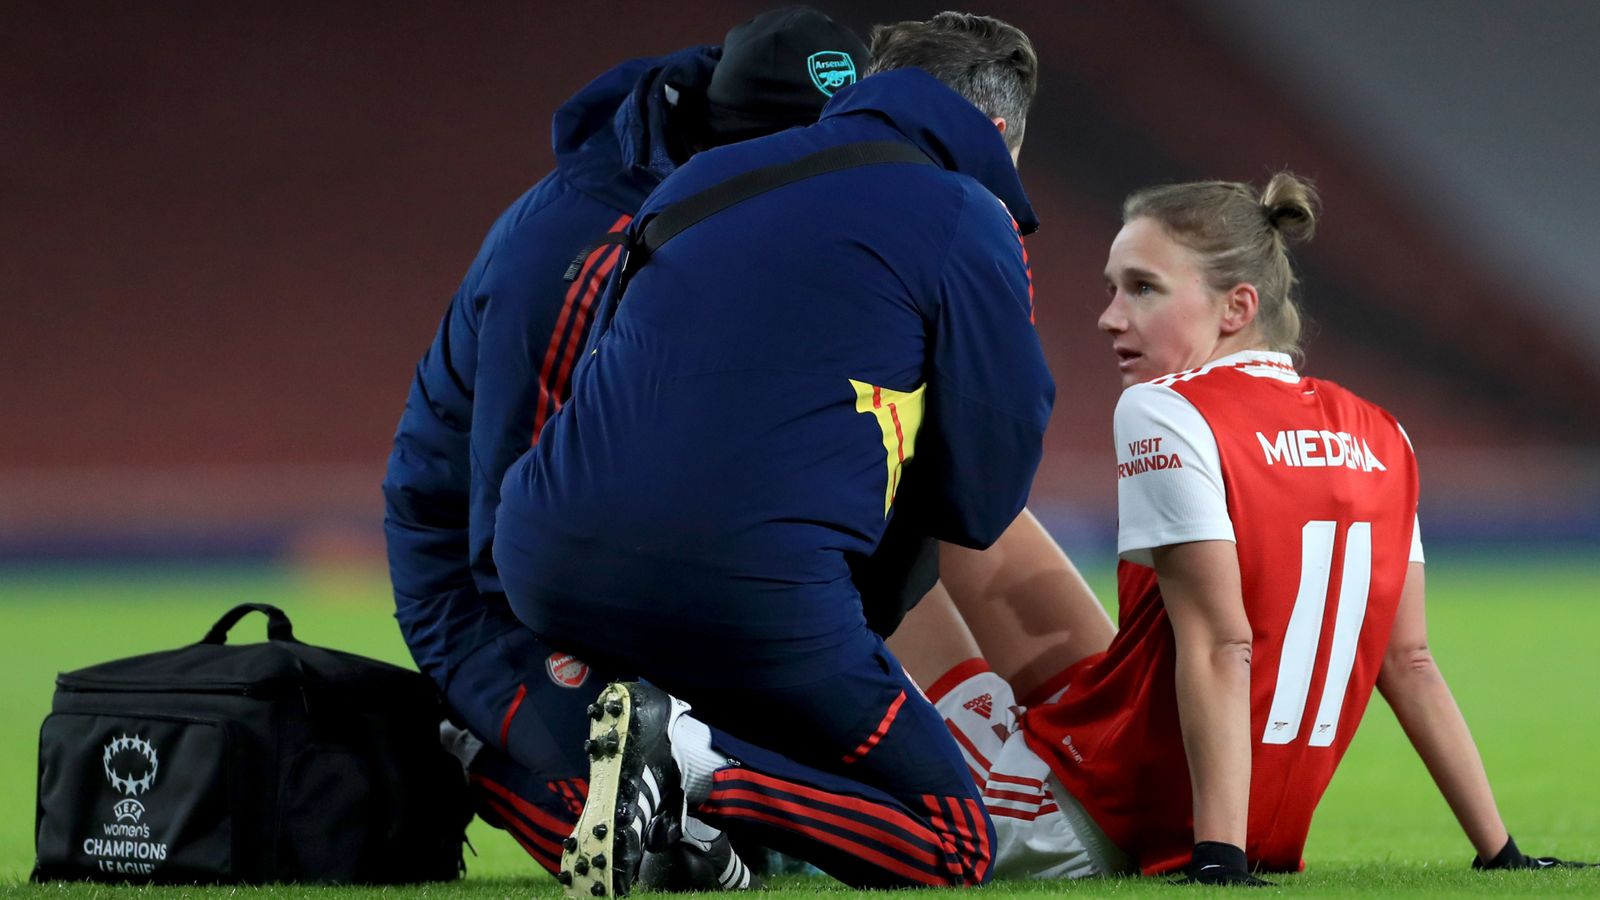 La investigación sobre las lesiones del ligamento cruzado anterior en el deporte femenino es “dispar y lenta”, según un informe de un comité selecto |  Noticias de futbol